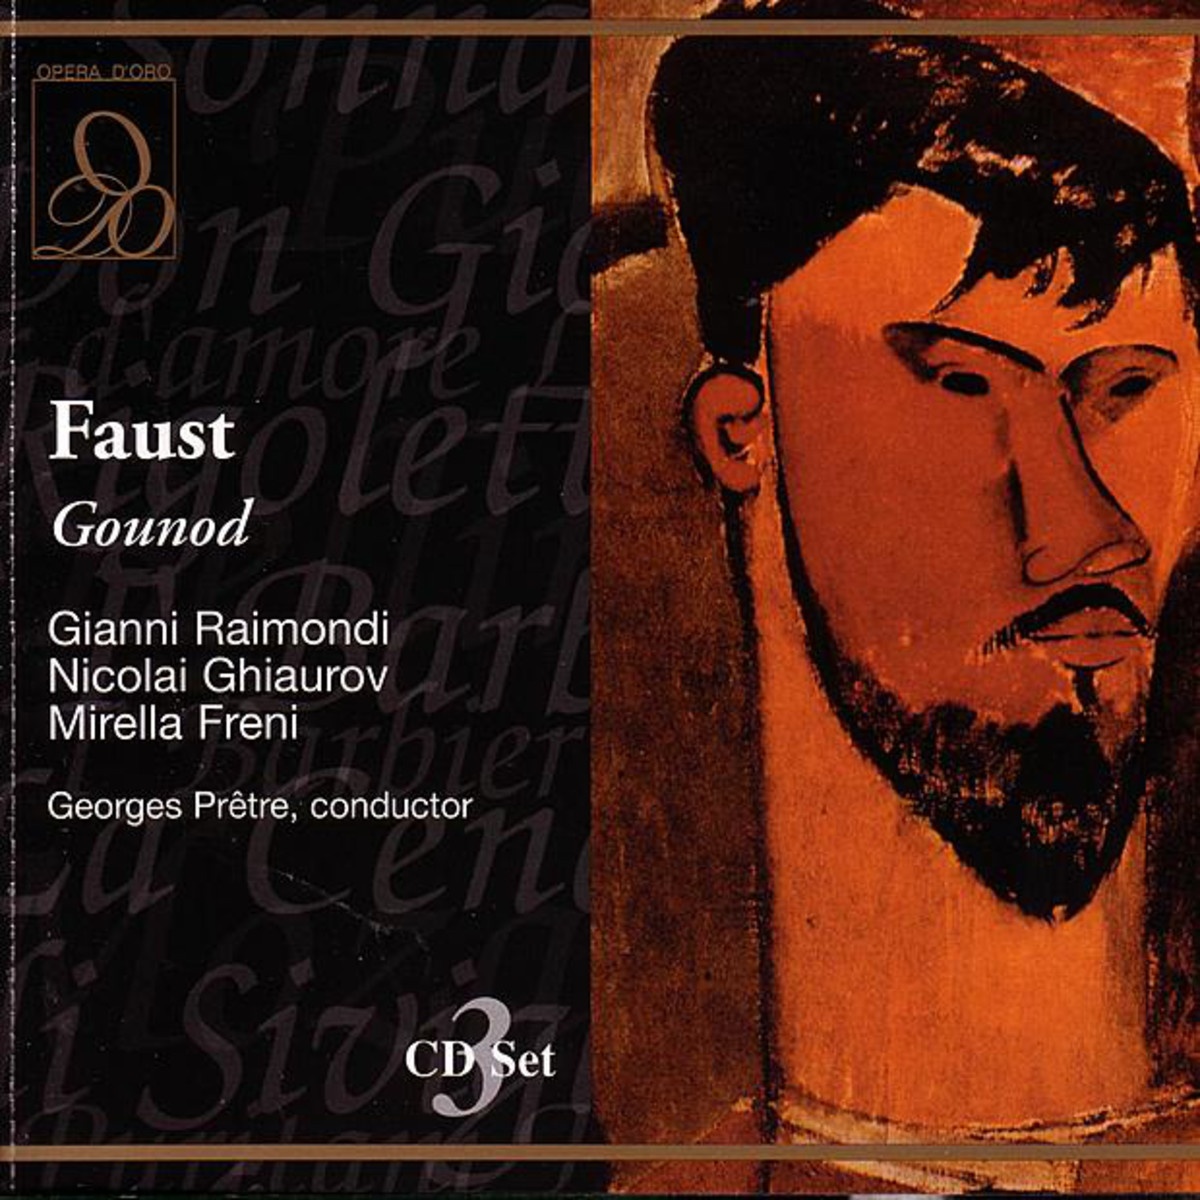 Faust 1986 Digital Remaster, Act V: Ah! C' est la voix du bienaime!.... Oui, c' est moi, je t' aime! Marguerite Faust